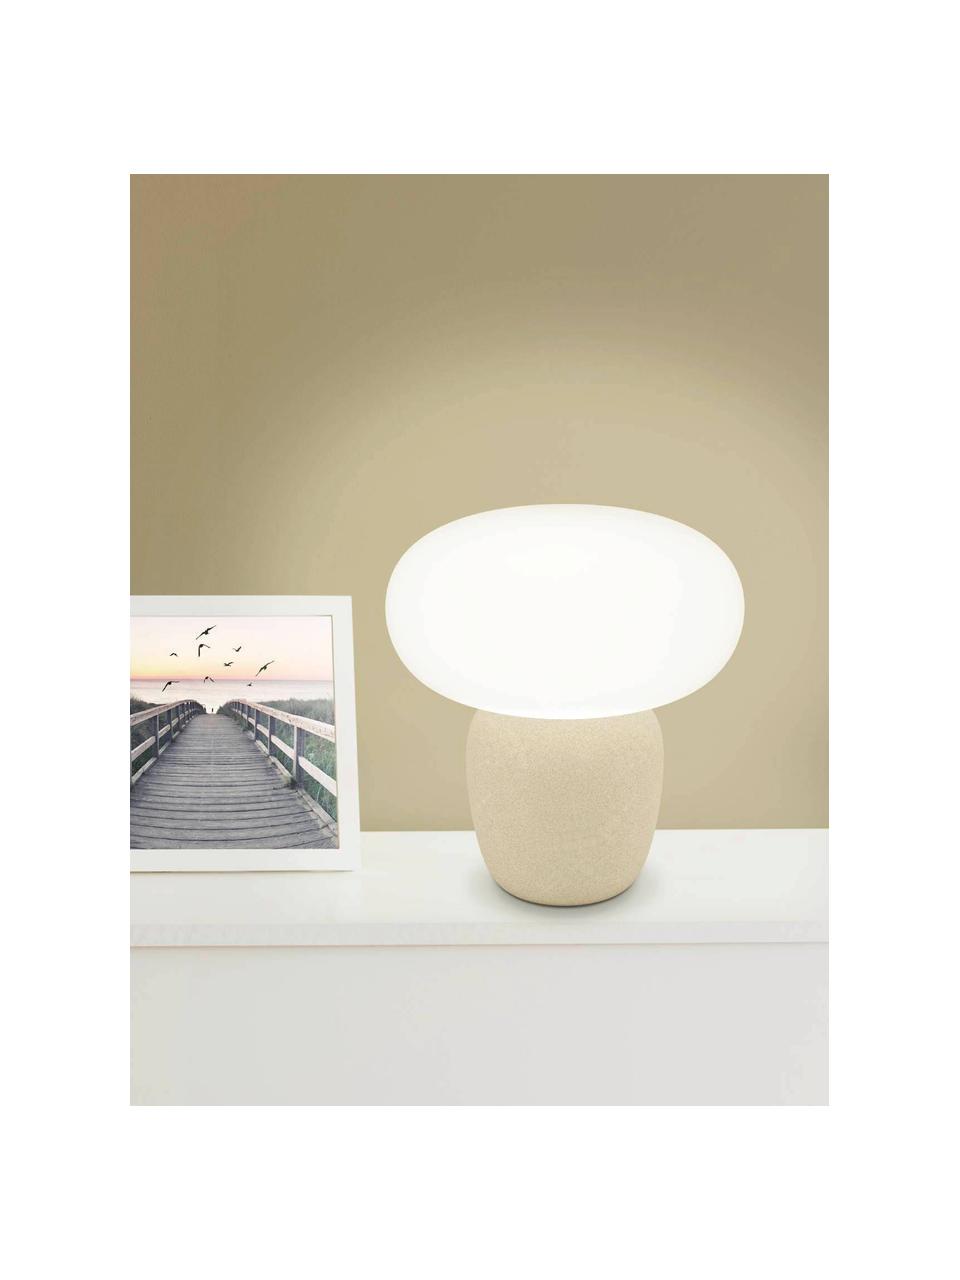 Kleine tafellamp Cahuama, Lampenkap: gesatineerd glas, Lampvoet: keramiek, Beige, wit, Ø 28 x H 30 cm